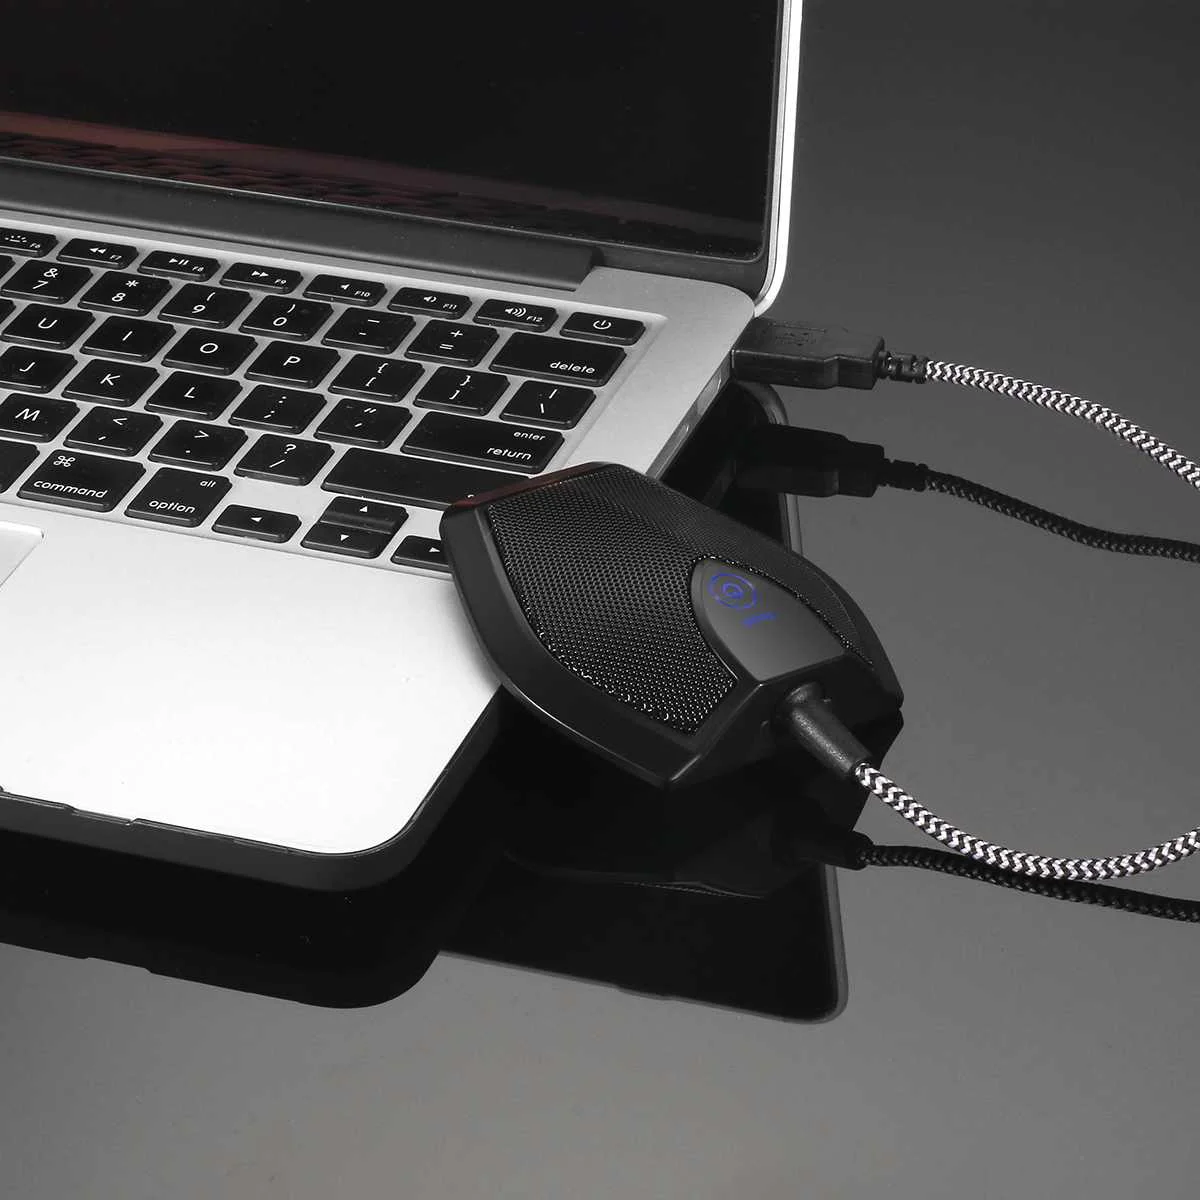 LEORY G11 USB проводной микрофон всенаправленный конденсаторный микрофон 50 Гц-16 кГц с сенсорная кнопка отключения звука для Бизнес конференции